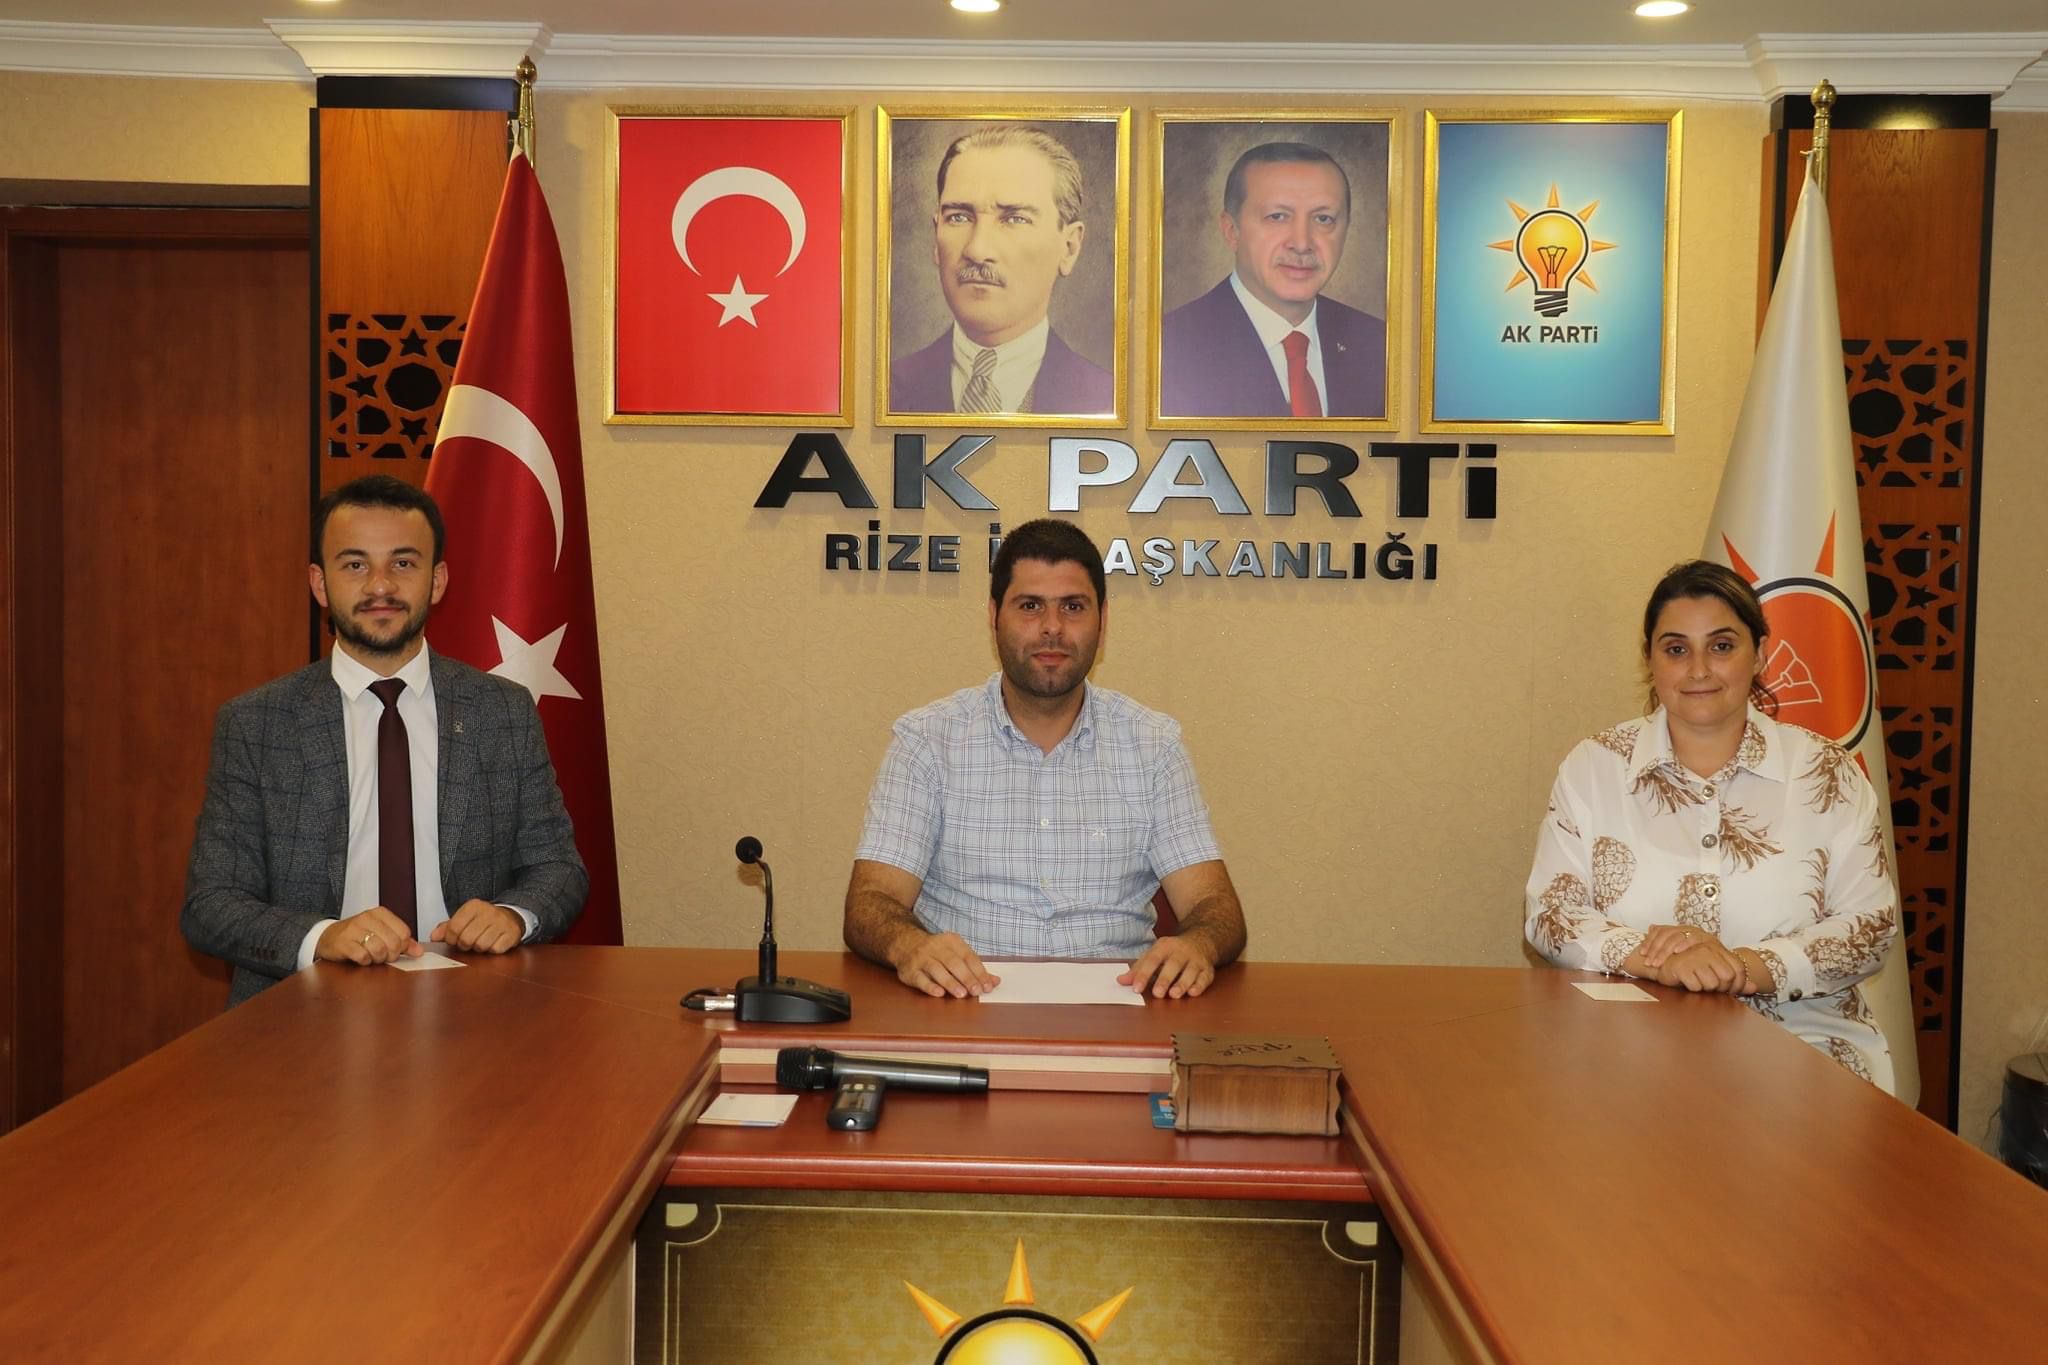 Türkiye’de darbeler tarihi bir daha açılmamak üzere 16 Temmuz sabahı itibariyle kapanmıştır